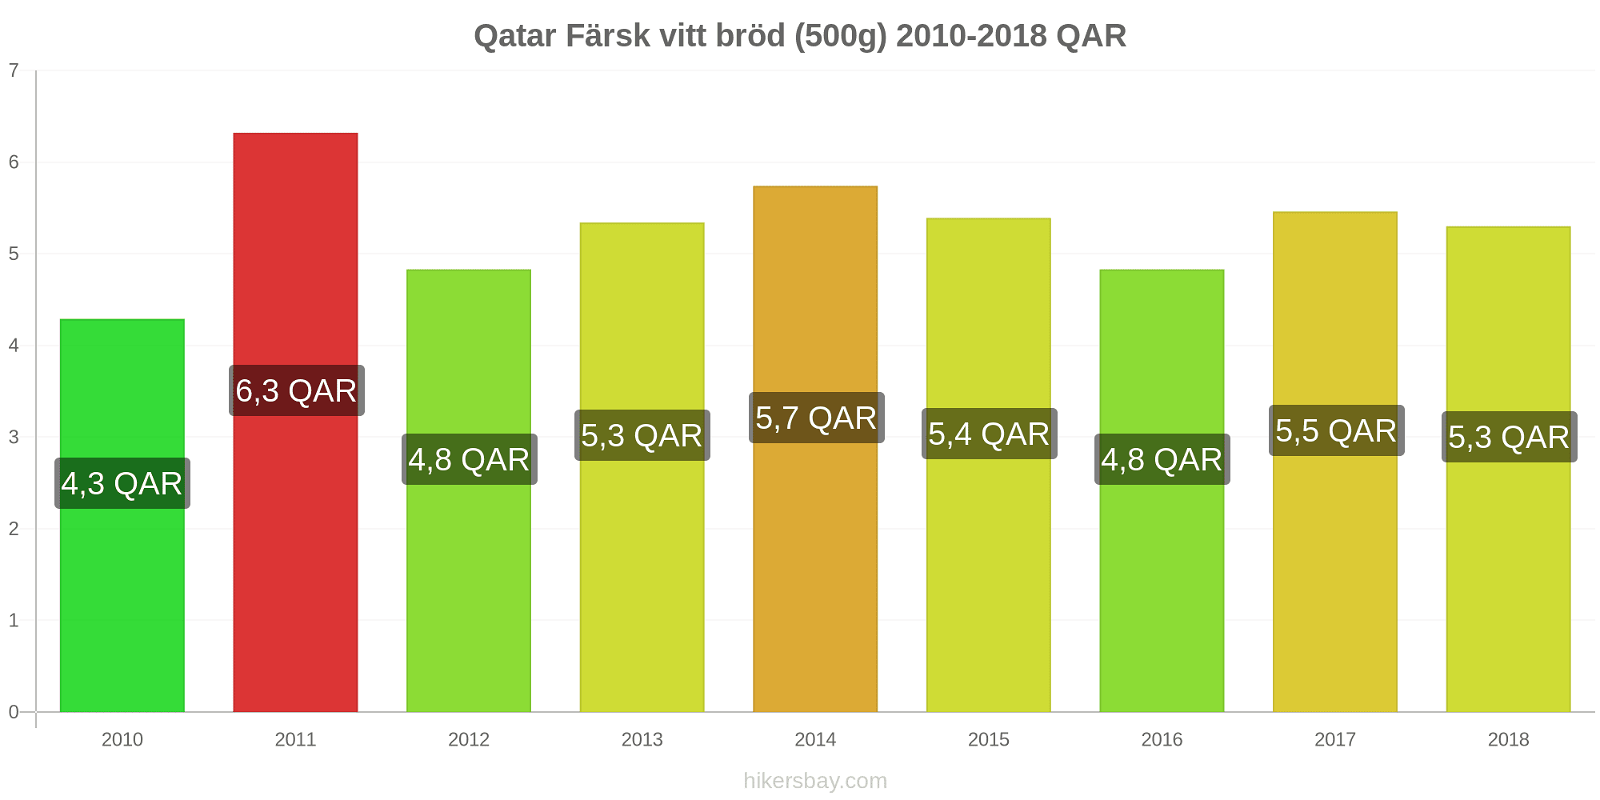 Qatar prisändringar Färsk vitt bröd (500g) hikersbay.com